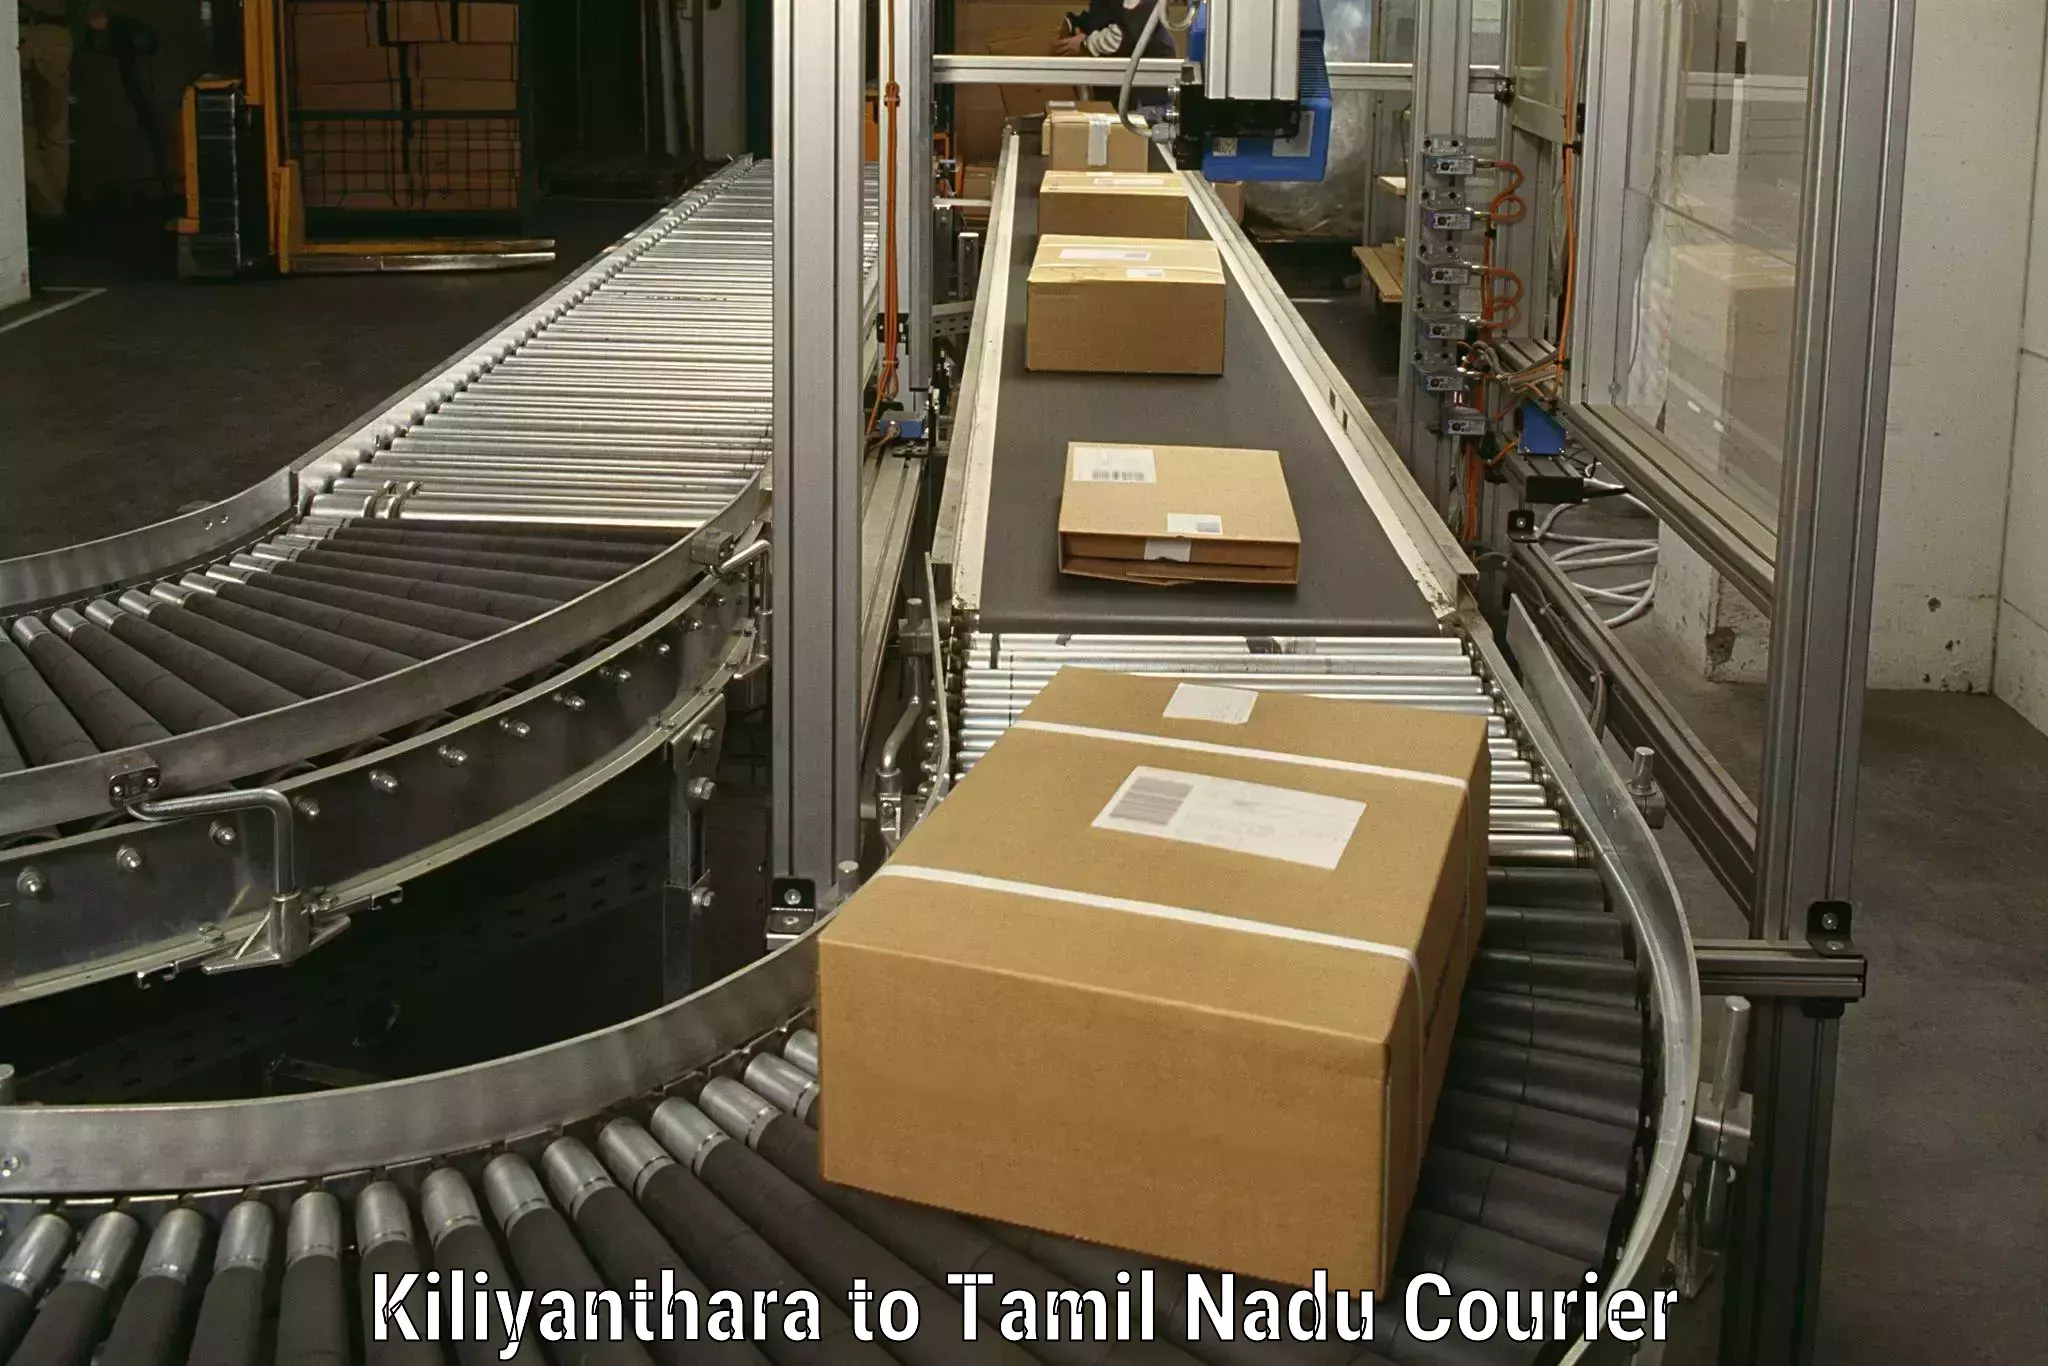 Moving and storage services Kiliyanthara to Kallakurichi